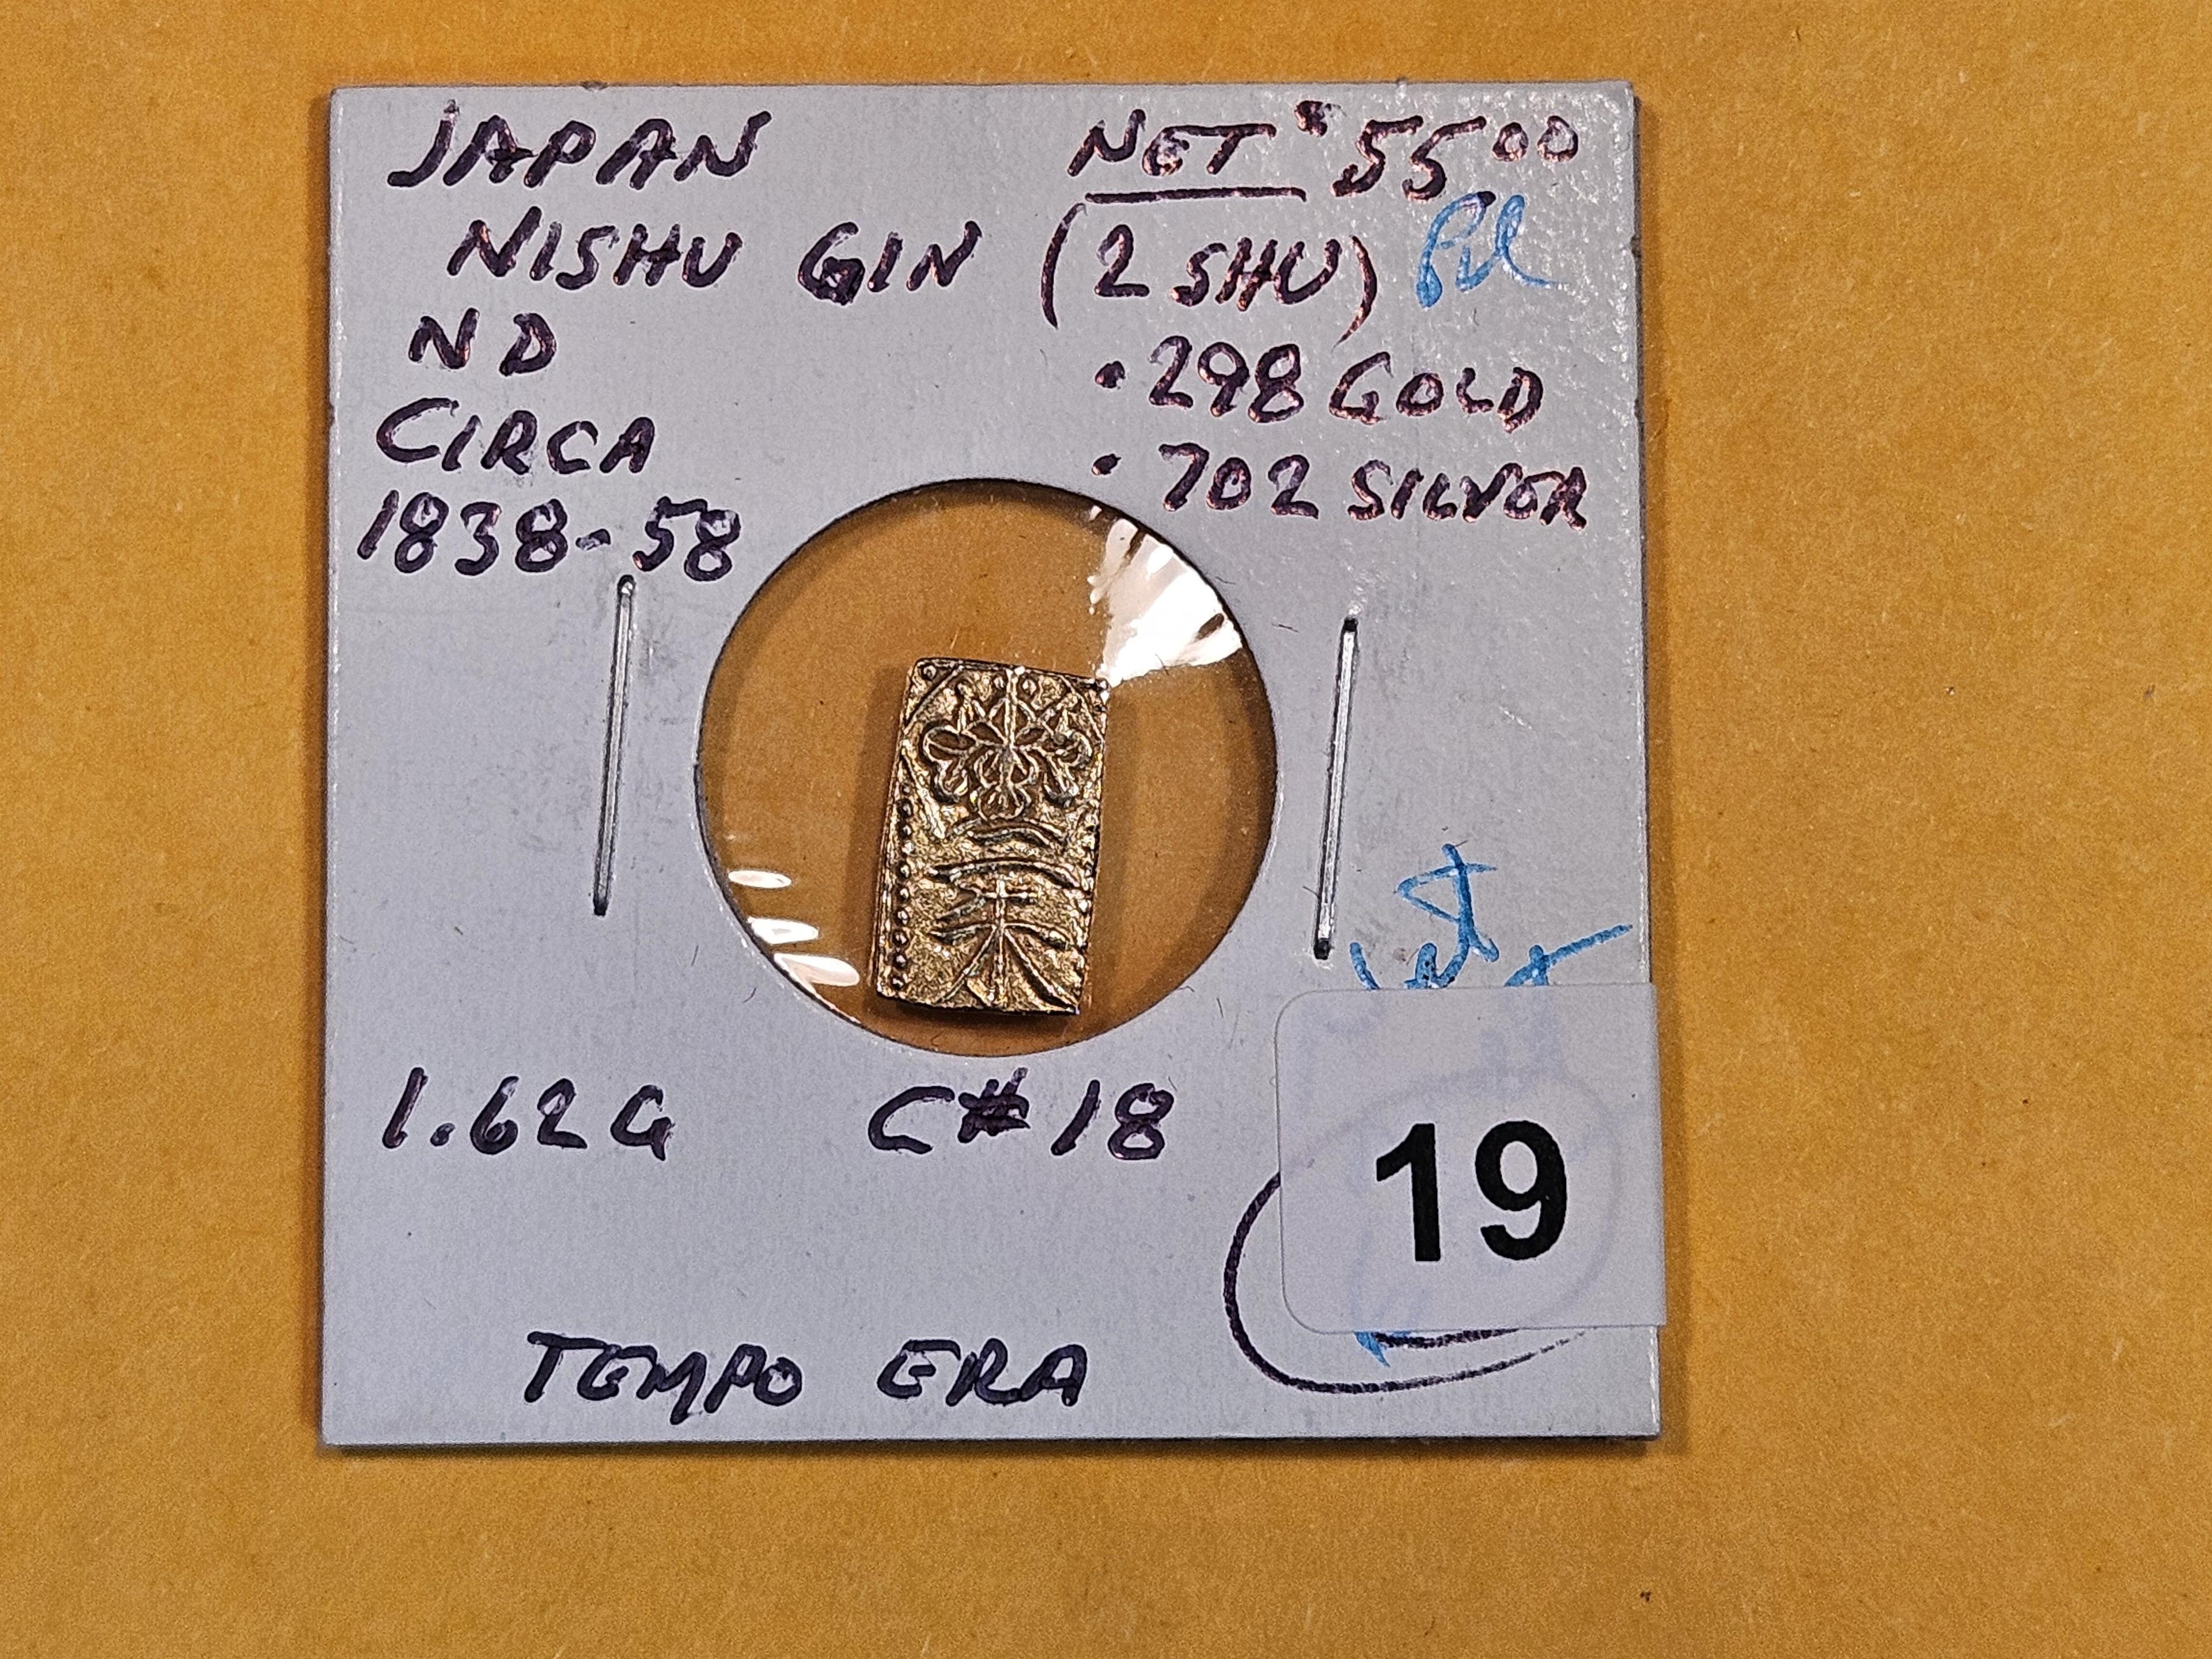 GOLD! 1838 - 1858 Japan Gold 2 Shu